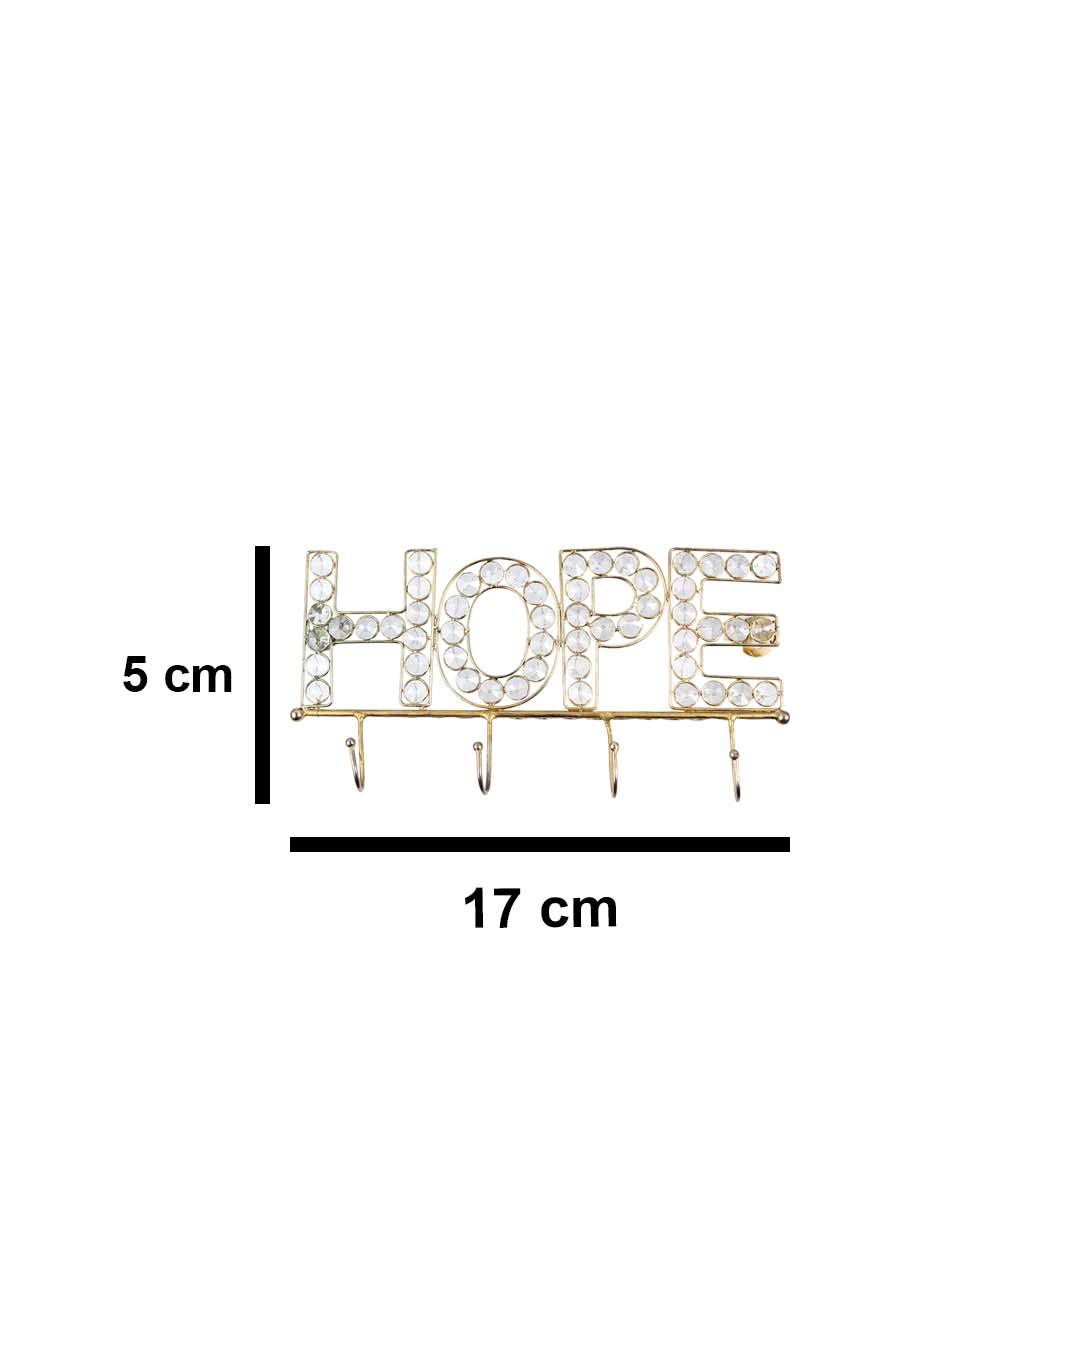 VON CASA "HOPE Sign" Crystal Wall Hook, 4 Hooks, Golden, Iron - VON CASA